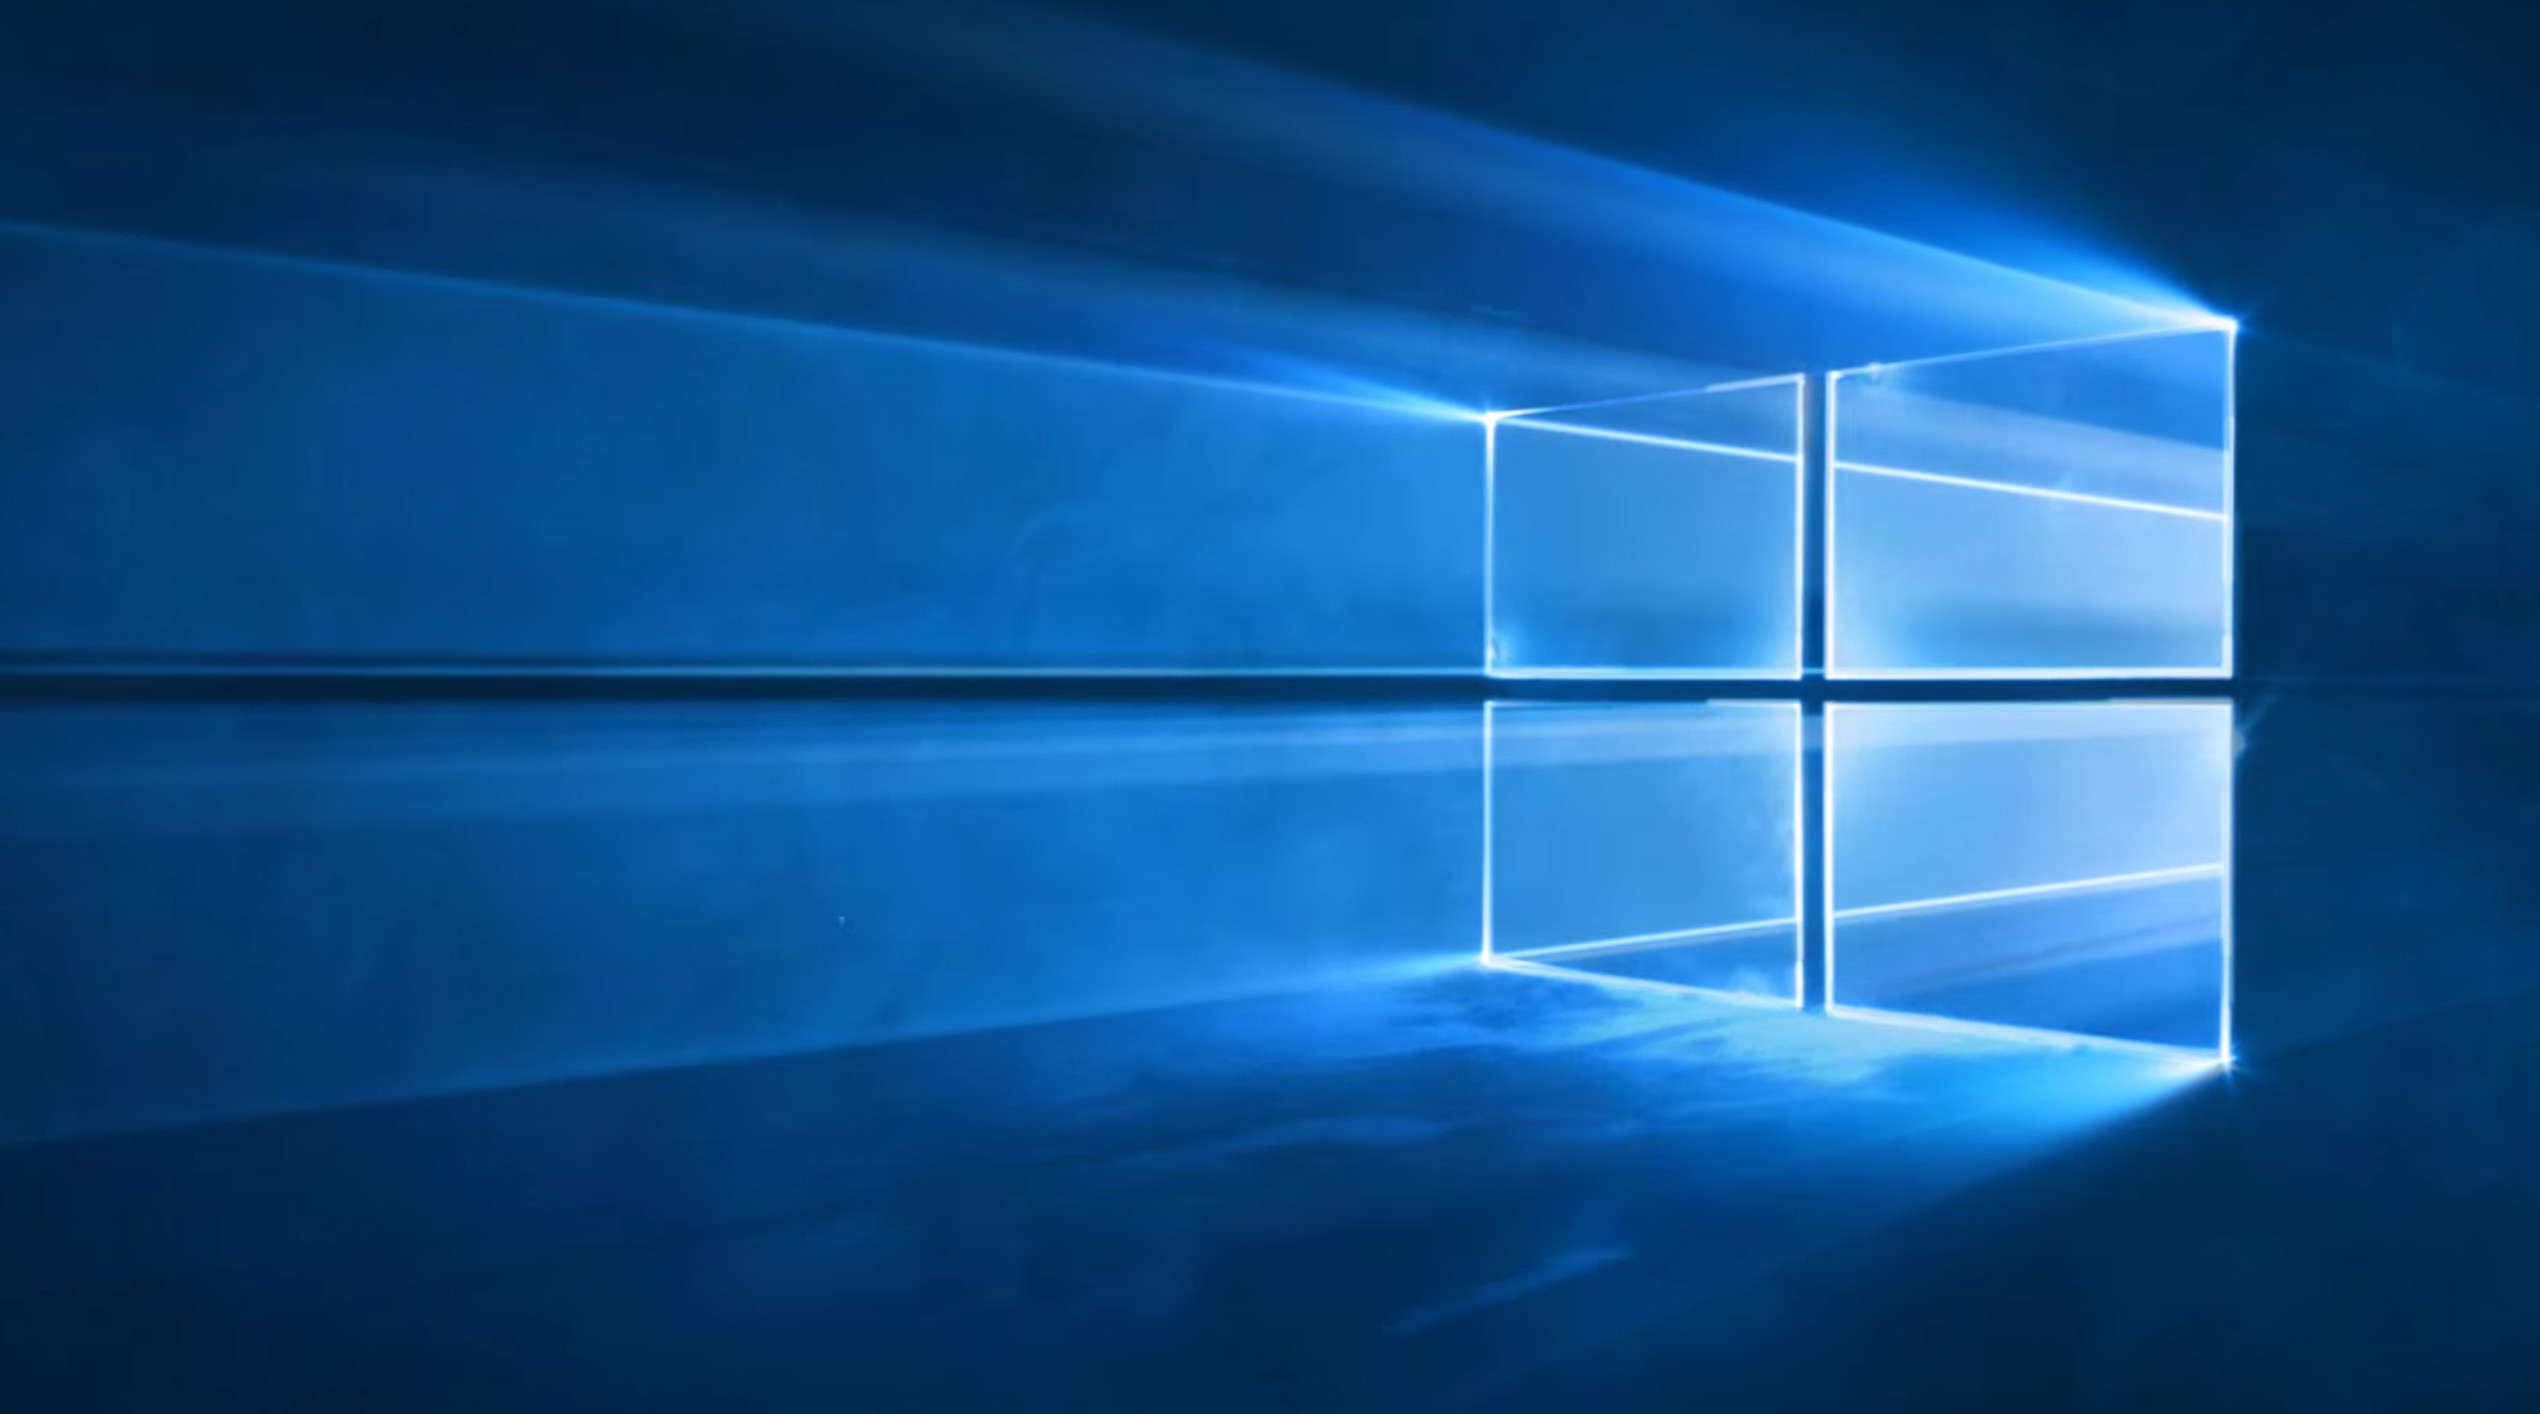 Hình nền đồng hồ Live Windows 10 sẽ đem đến cho bạn trải nghiệm mới lạ với đồng hồ sống động trên màn hình máy tính của mình. Với độ chính xác cao, đồng hồ sẽ hiển thị chính xác thời gian trong thời gian thực. Tận hưởng những giây phút thư giãn và hiện đại cùng hình nền này.